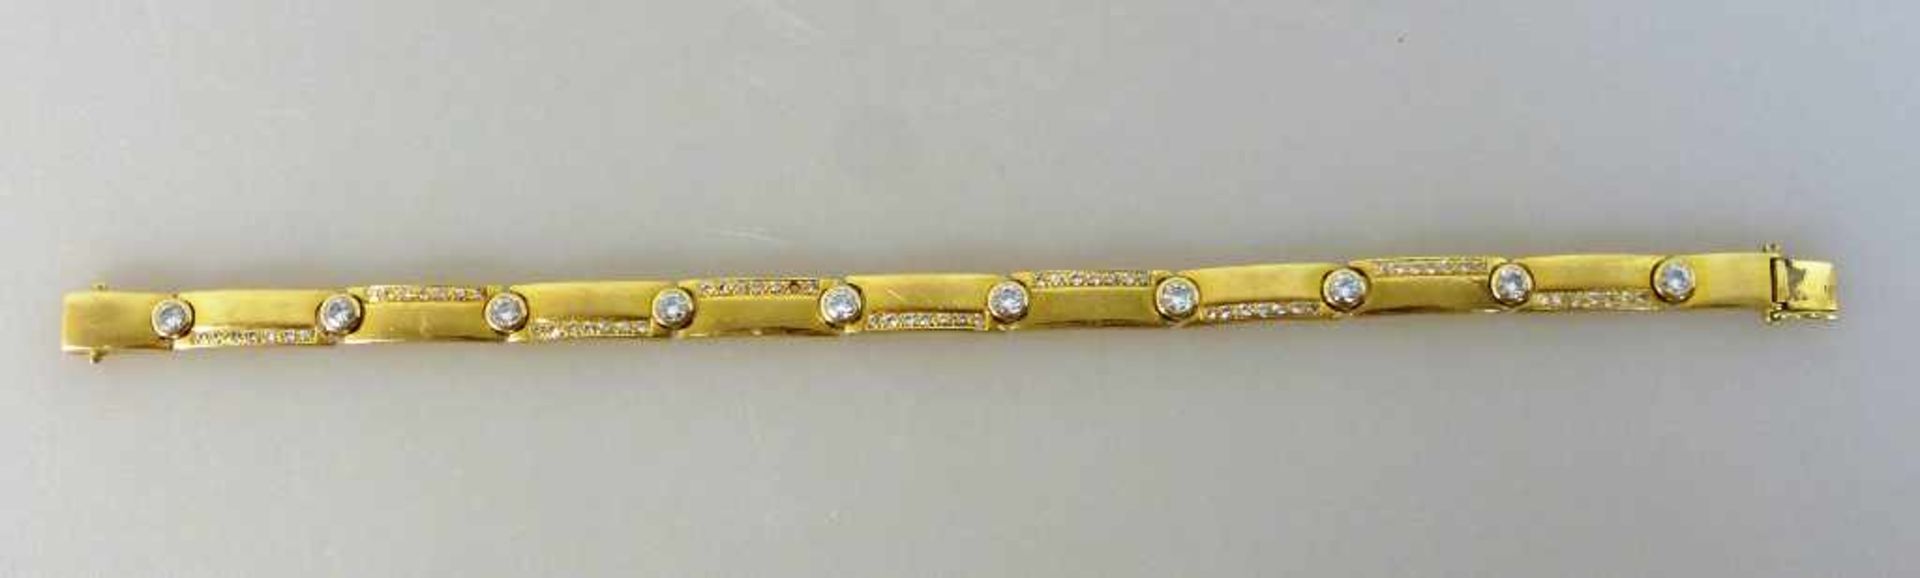 Diamantarmband, Gelbgold 750, besetzt mit 10 Diamanten und 63 Diamantsplitter (1 fehlt),